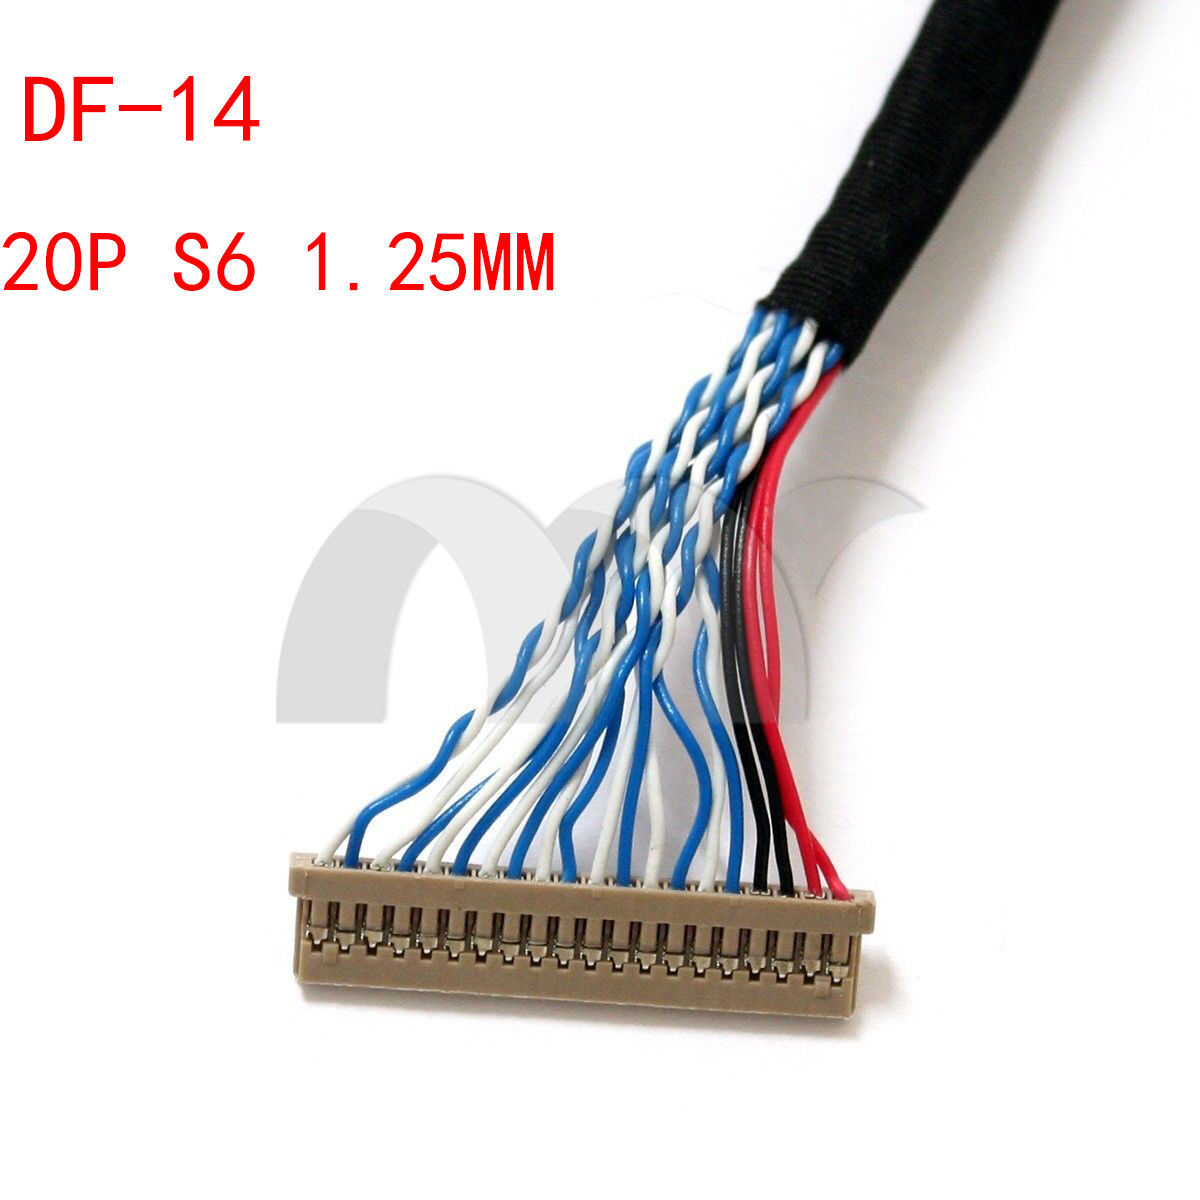 Kabel pro displeje LVDS DF14-20P 2ch 6bit 250mm